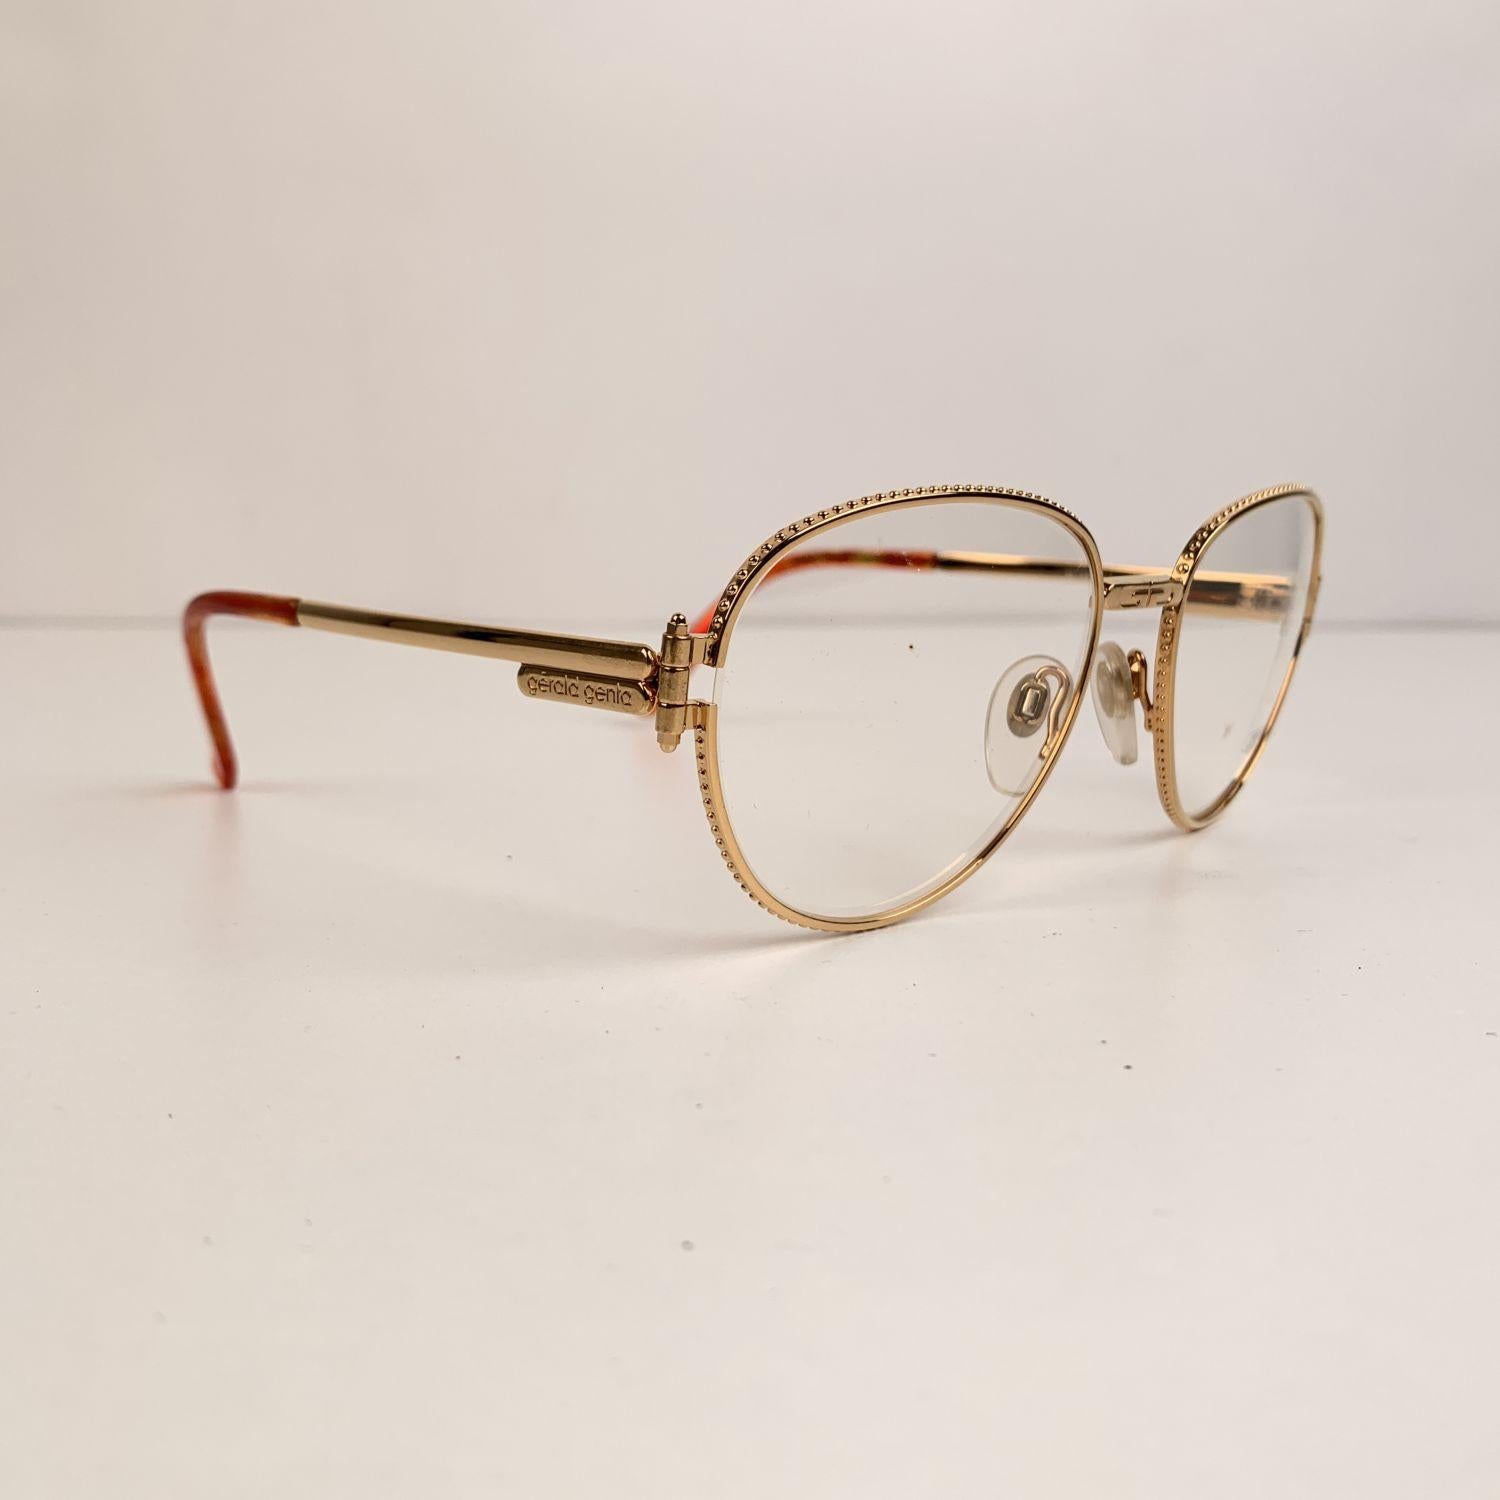 Women's Gerald Genta Vintage Eyeglasses Gold Plated Gefica 03 Frame 140 mm